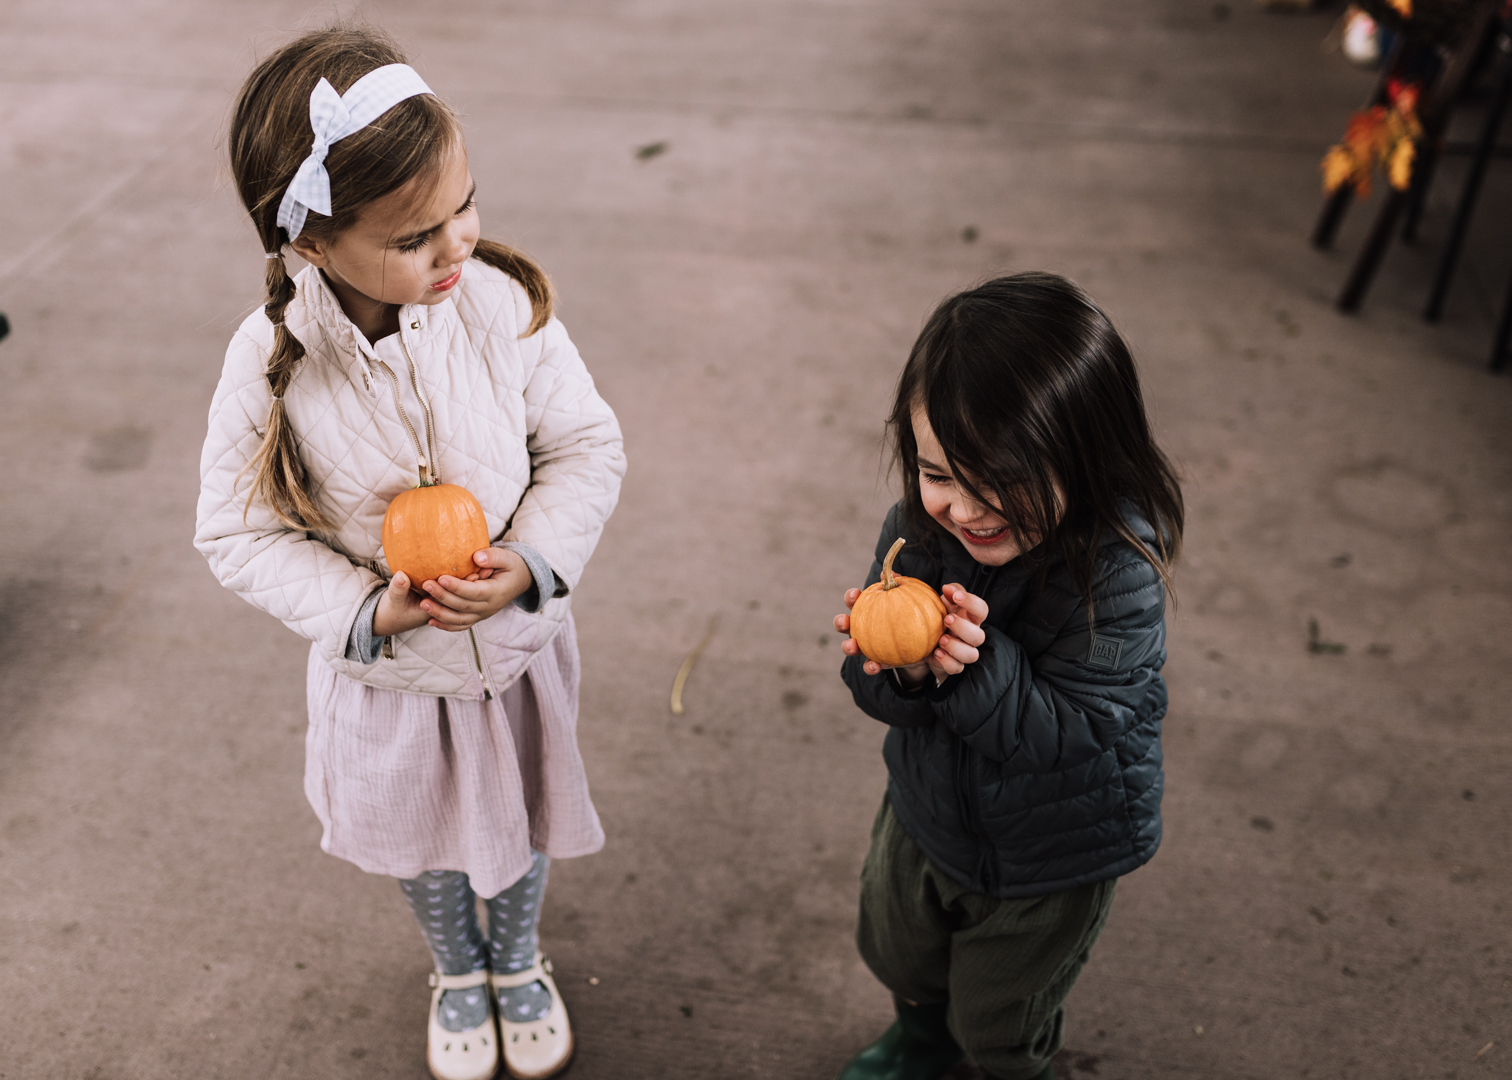 baby pumpkins for my little pumpkins | thelovedesignedlife.com #fall #pumpkins #childhood